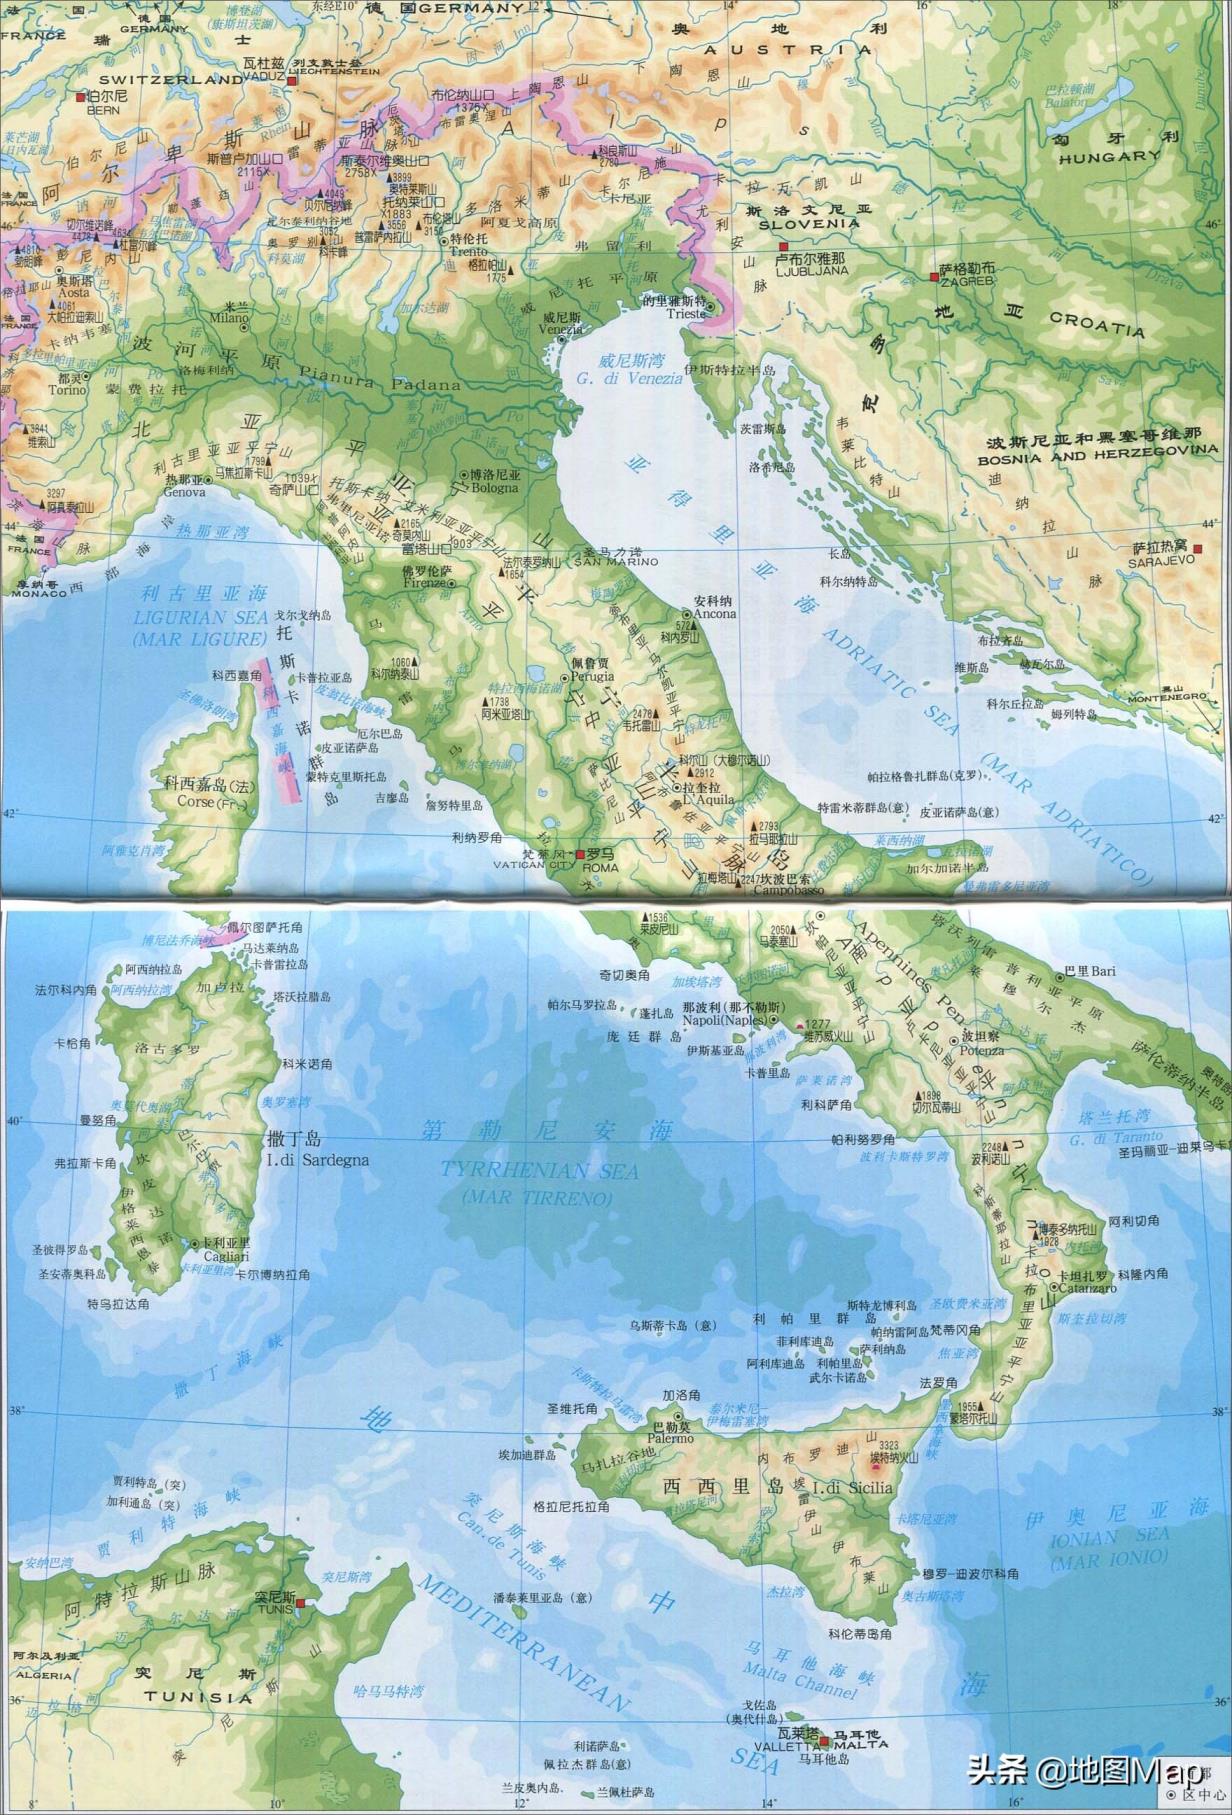 意大利国土面积和人口意大利介绍